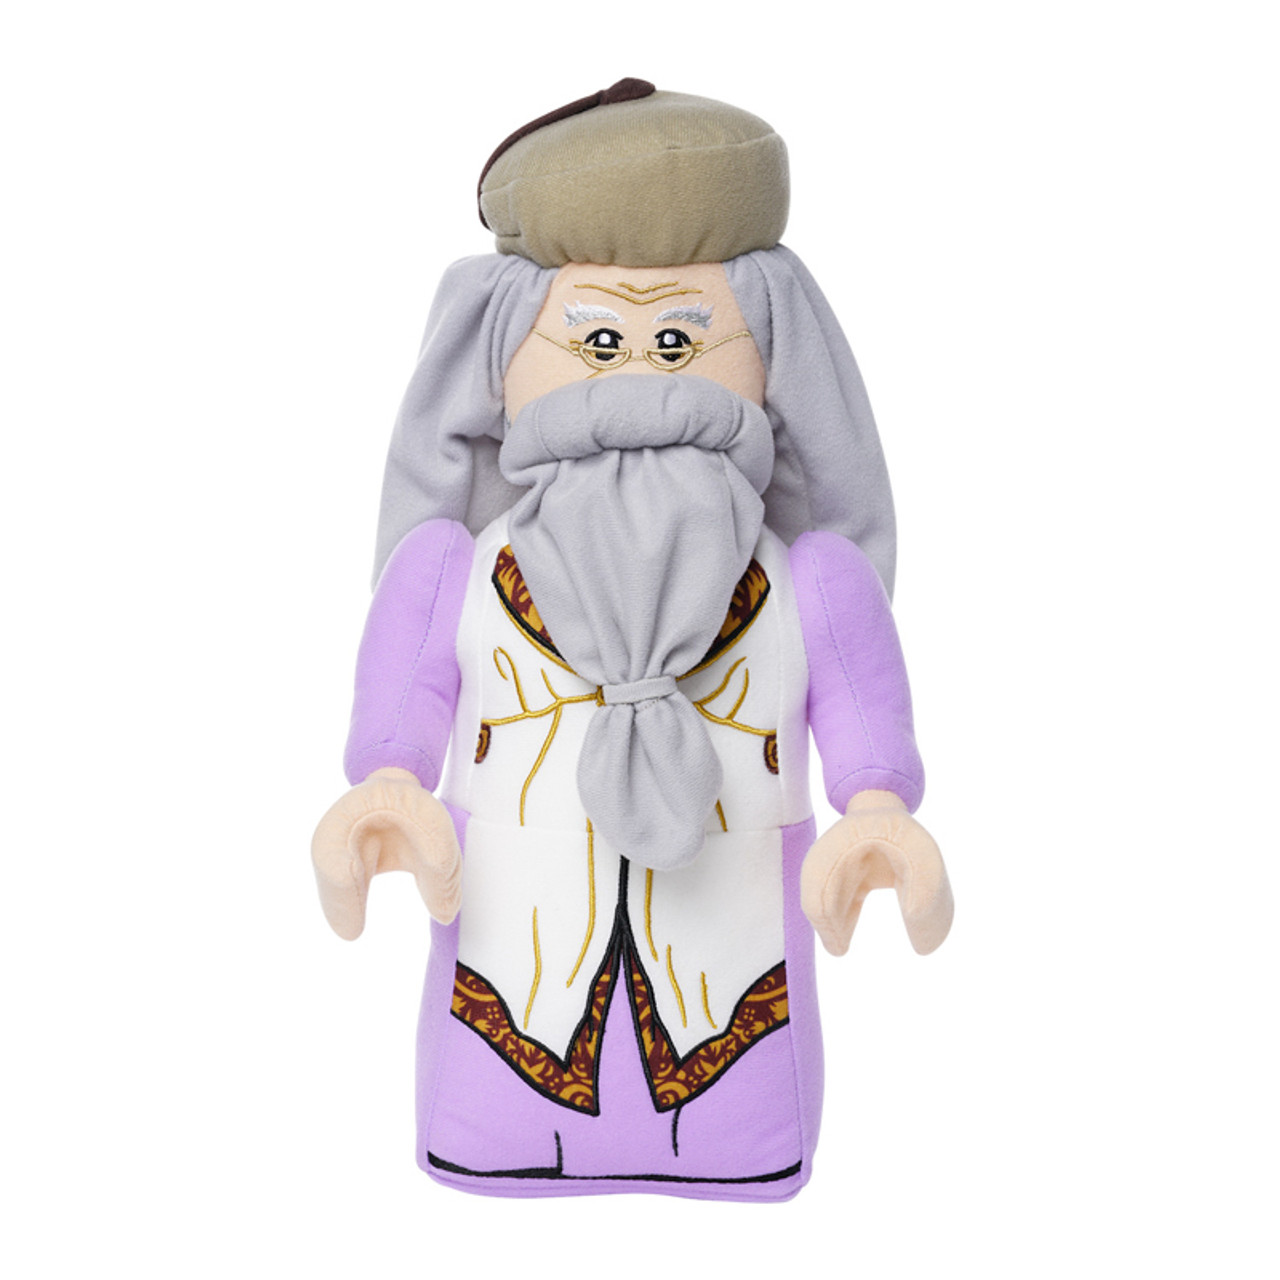 Lego Albus Dumbledore Plush, 31 cm EAN 514441